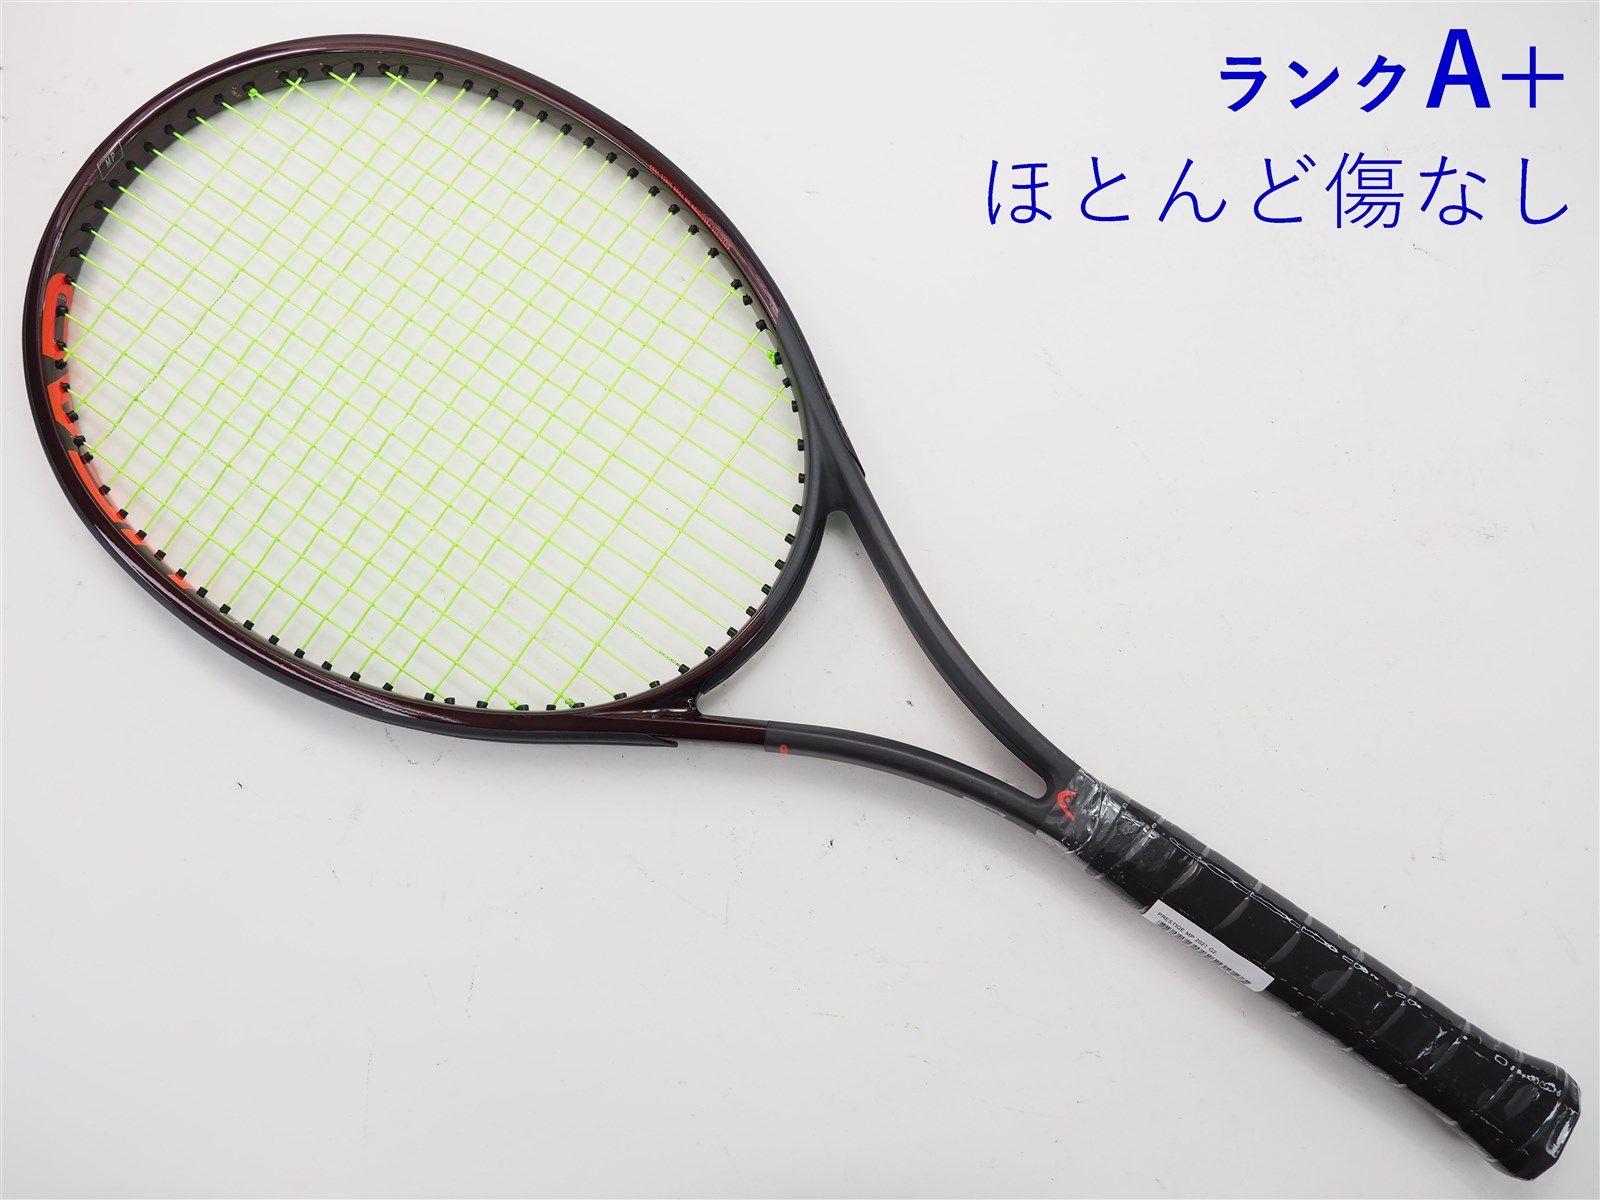 【中古】ヘッド プレステージ MP 2021年モデルHEAD PRESTIGE MP 2021(G2)【中古 テニスラケット】【送料無料】